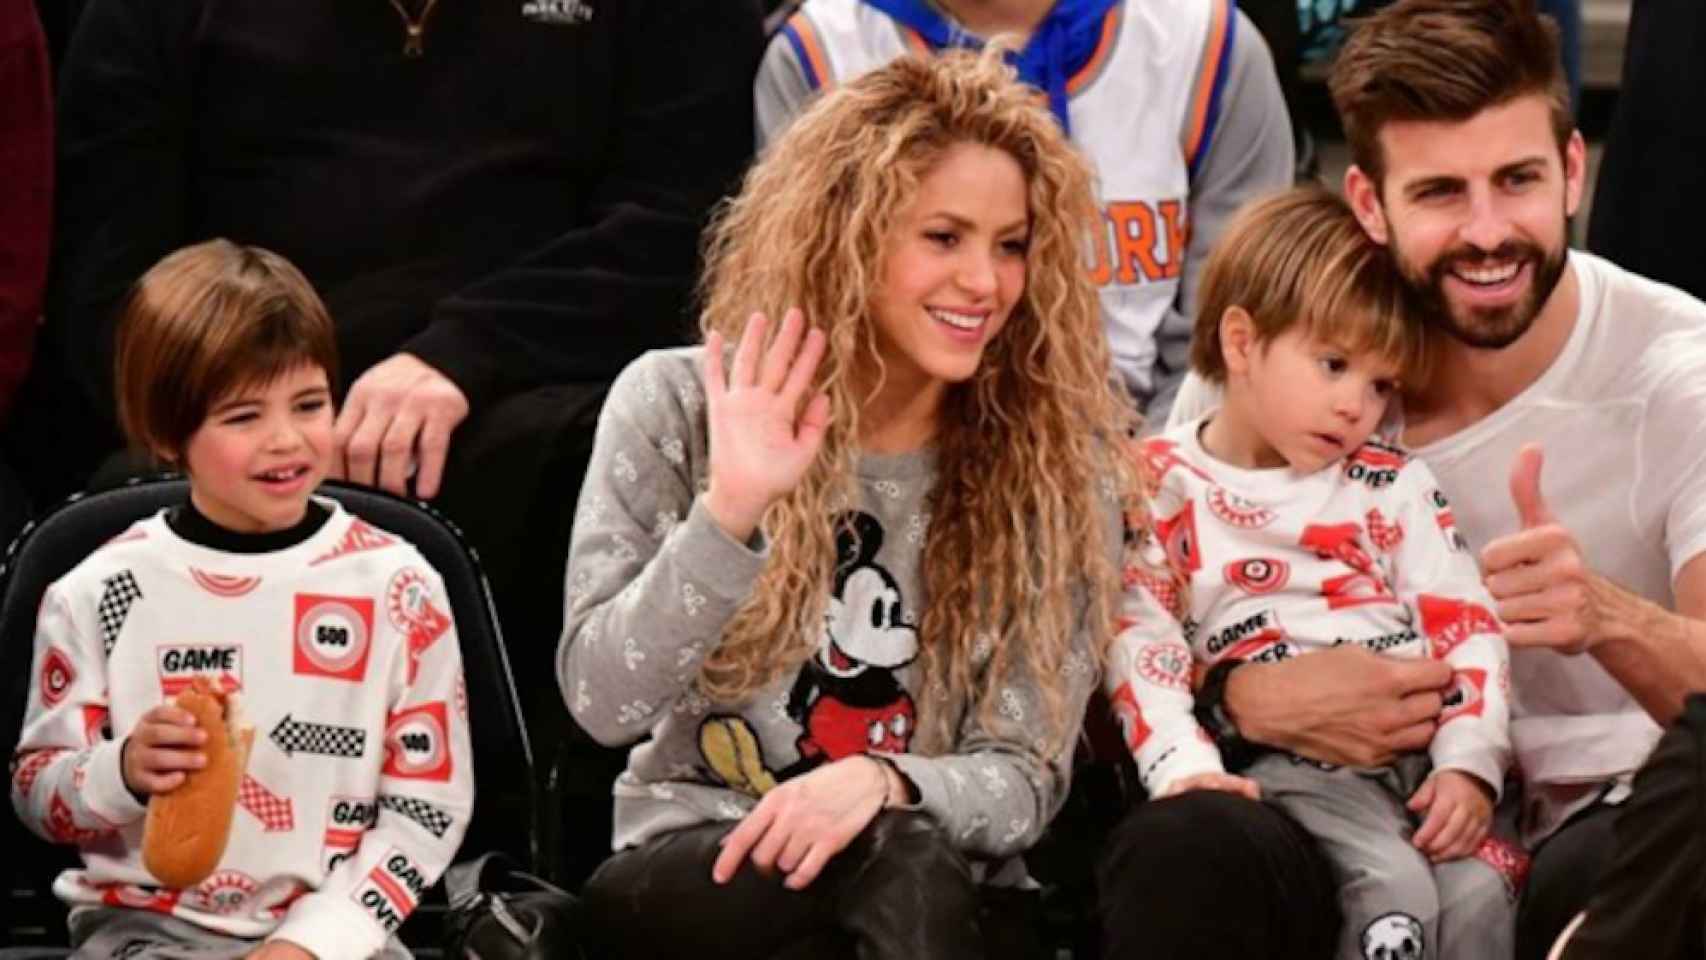 Una foto de archivo de Gerard Piqué, Shakira y sus dos hijos Milan y Sasha